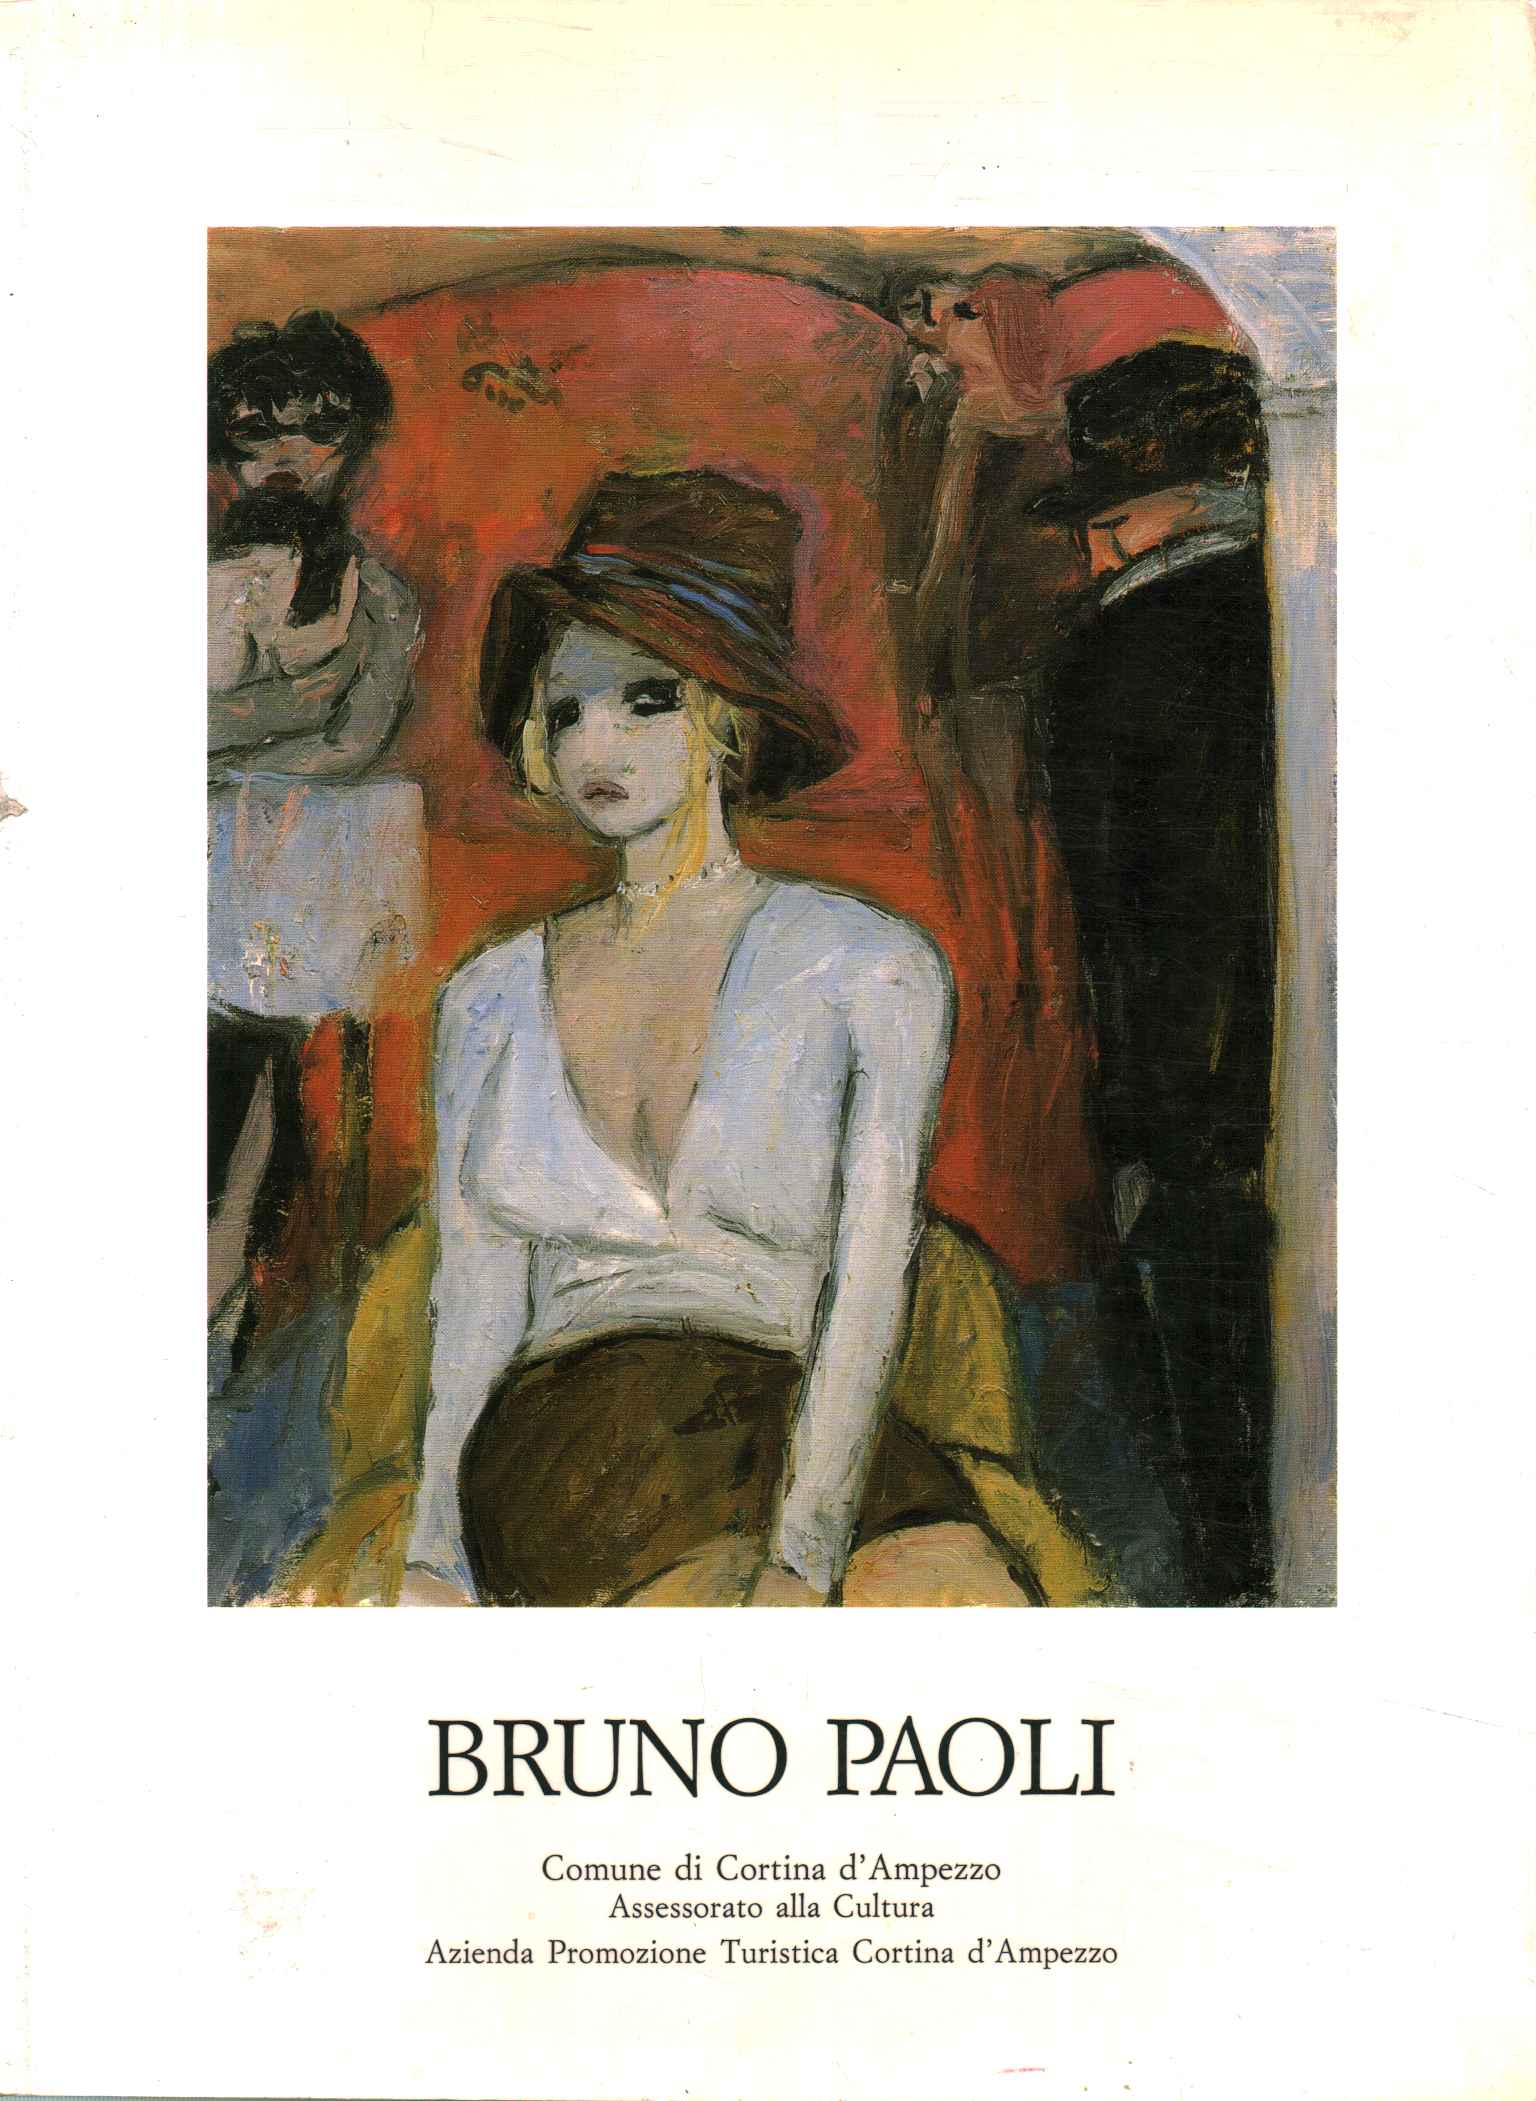 Bruno Paoli. Figuren in einem Innenraum